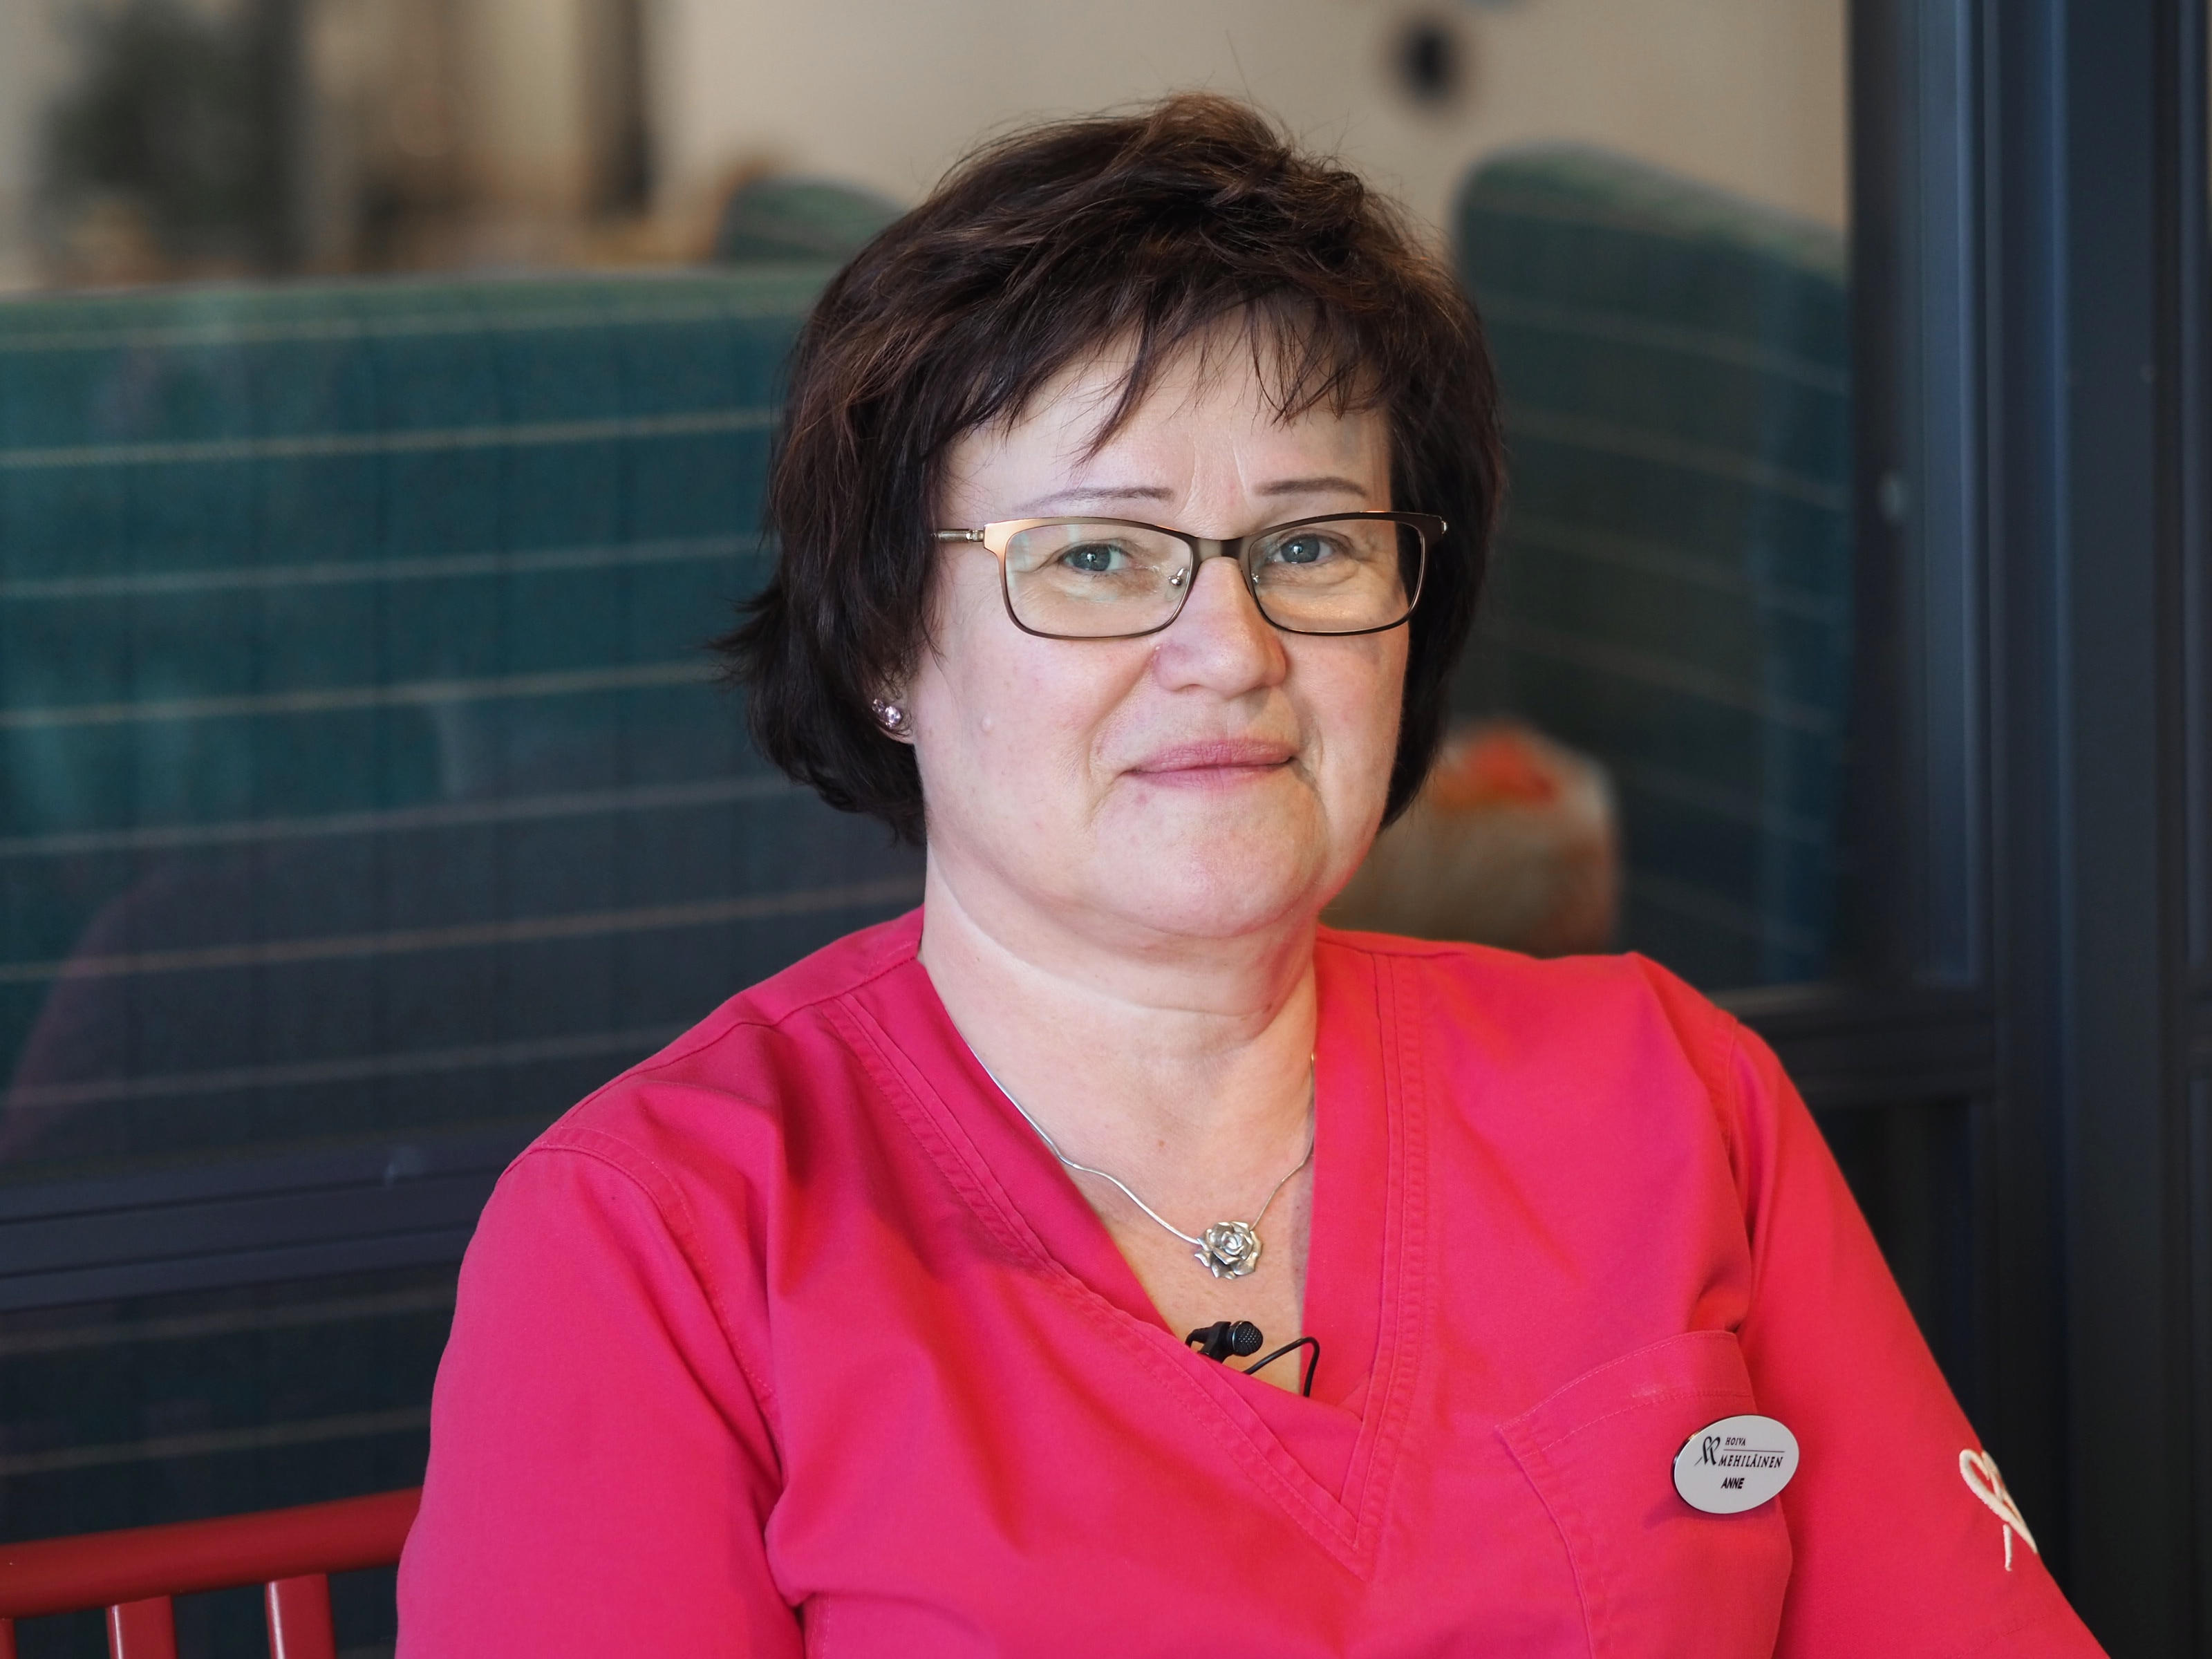 Anne Järvinen ajatteli pitkään kuuluvansa hoitoalalle, mutta hakeutui opiskelemaan lähihoitajaksi vasta myöhemmällä iällä.